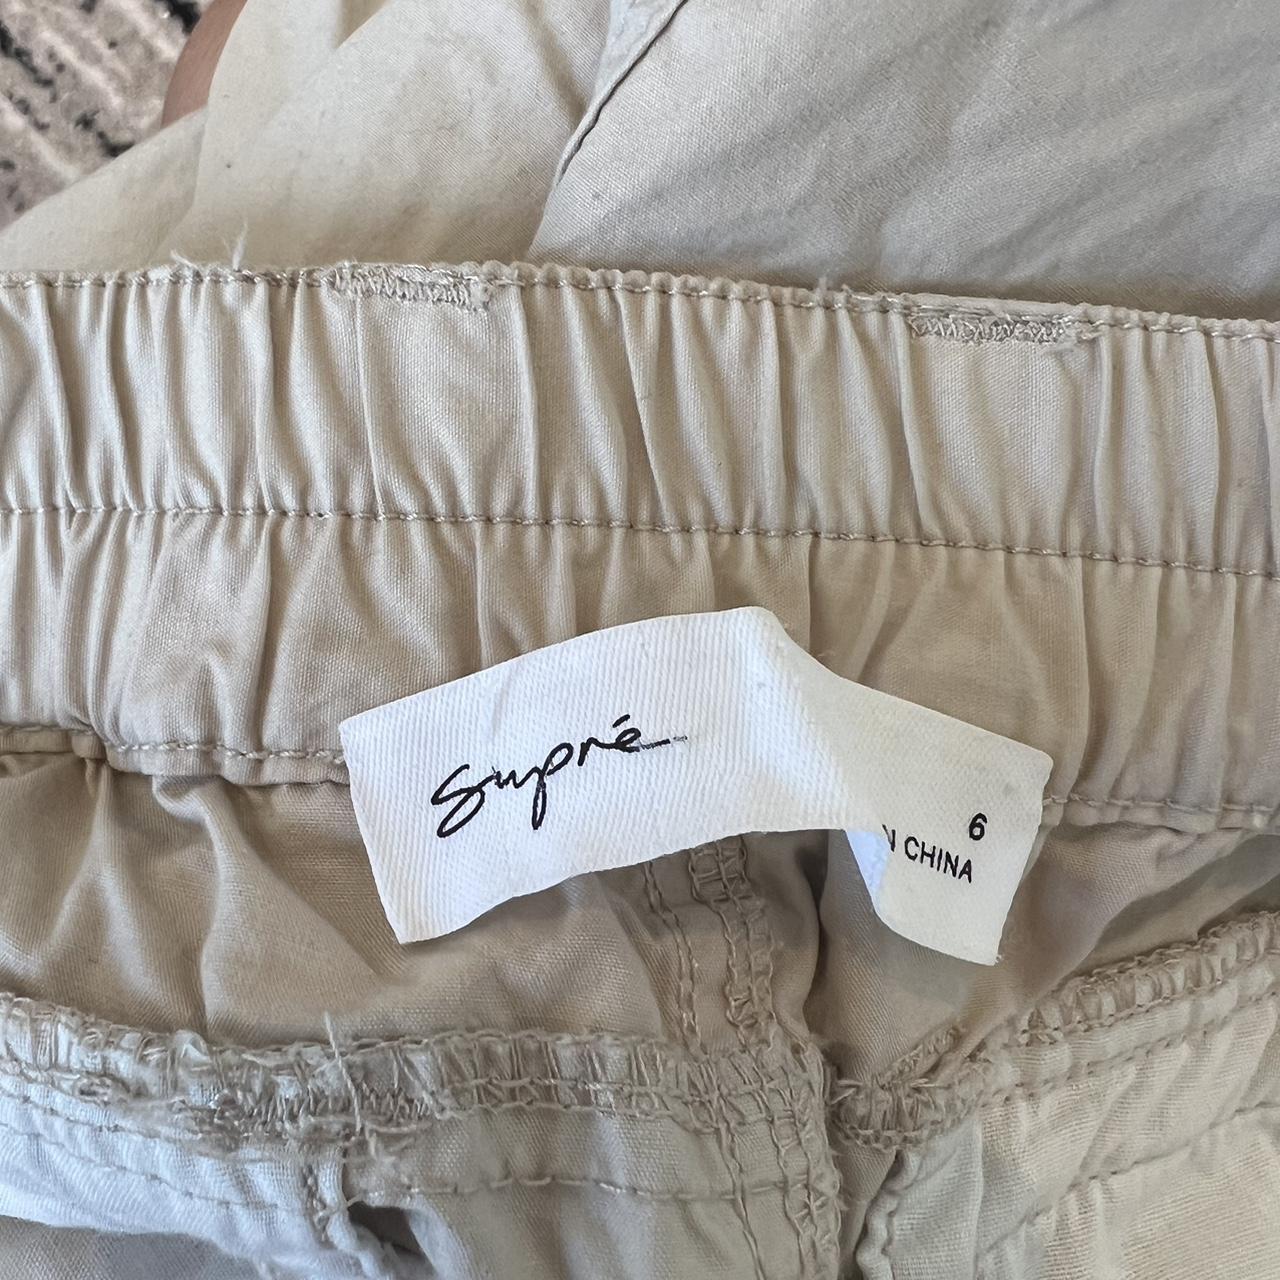 Cream cargo pants Supre - an Australian brand... - Depop